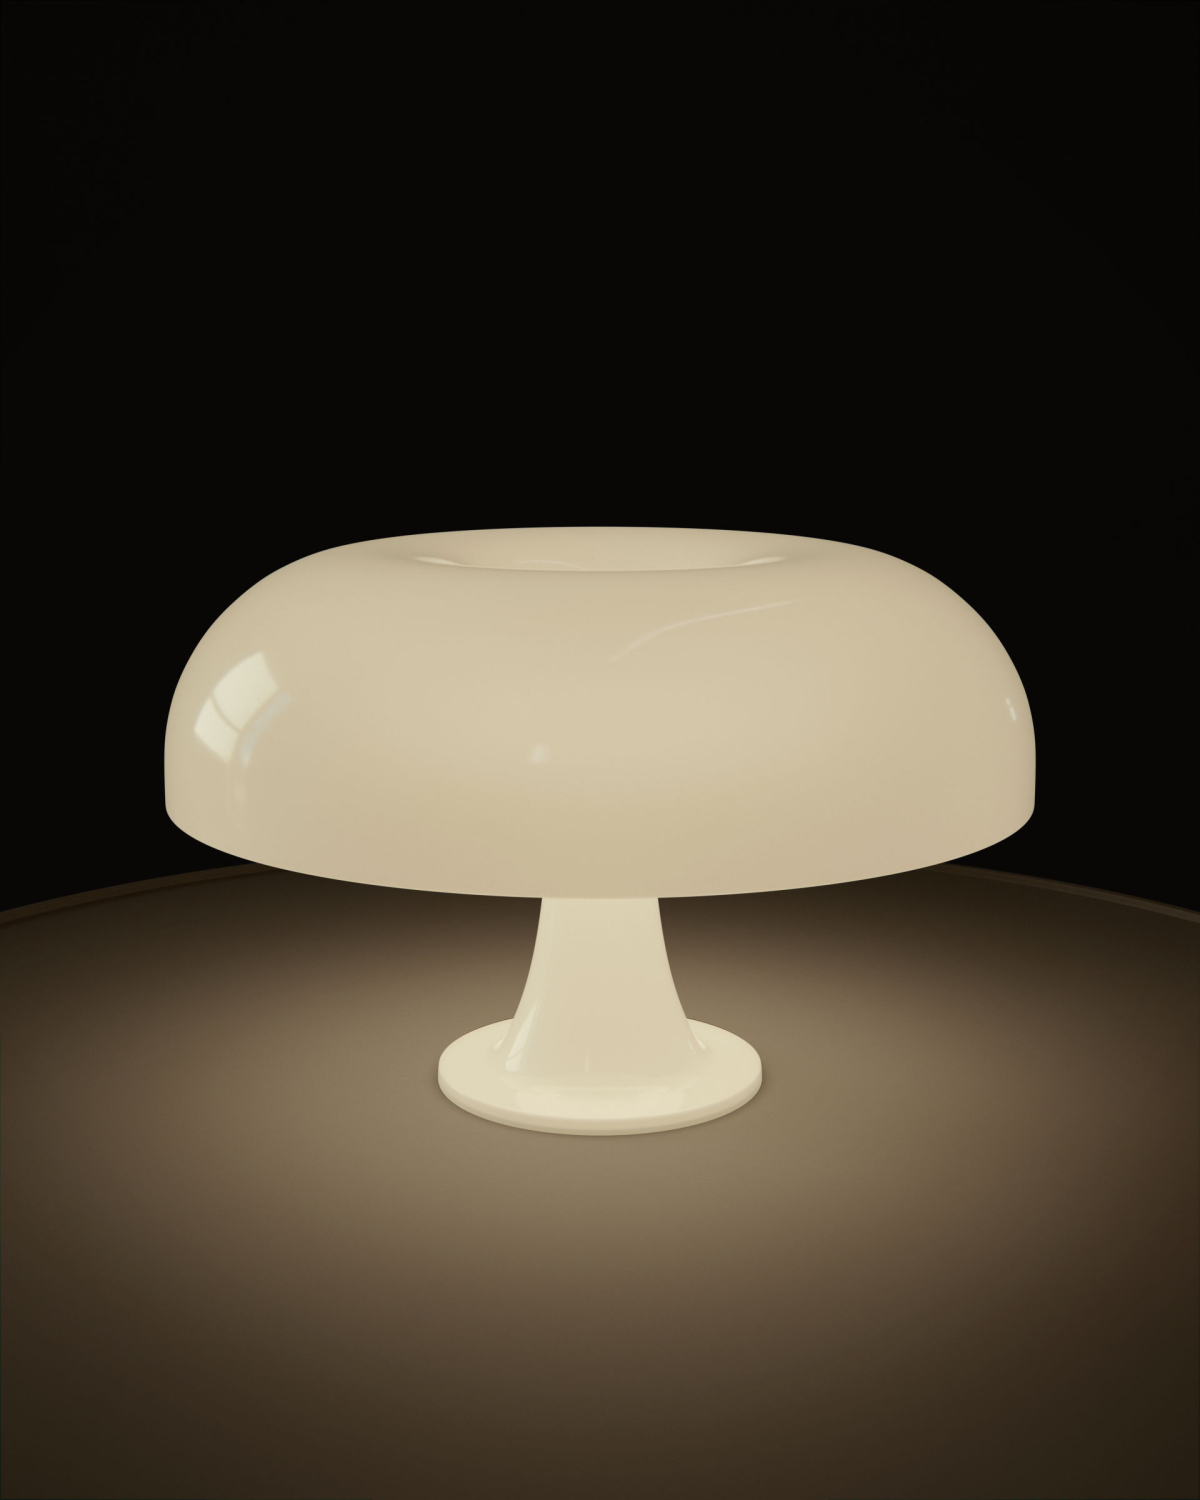 15 NessoLamp V2 - Nesso table lamp CGI - Sonny Nguyen